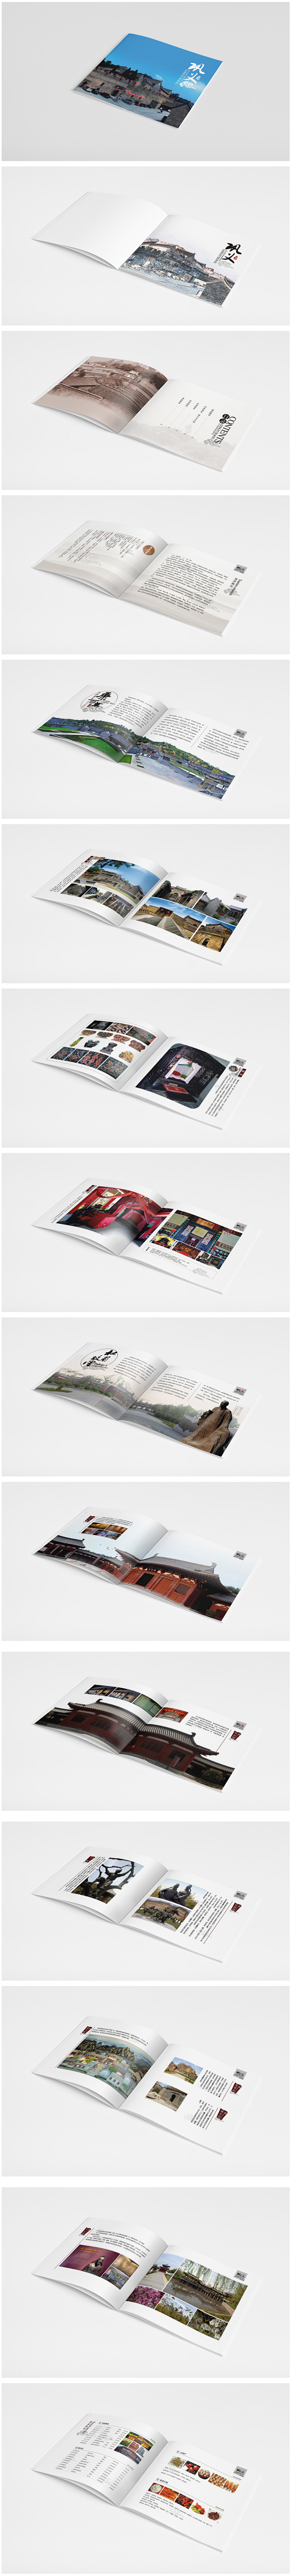  画册设计 企业画册设计 宣传画册 画册...